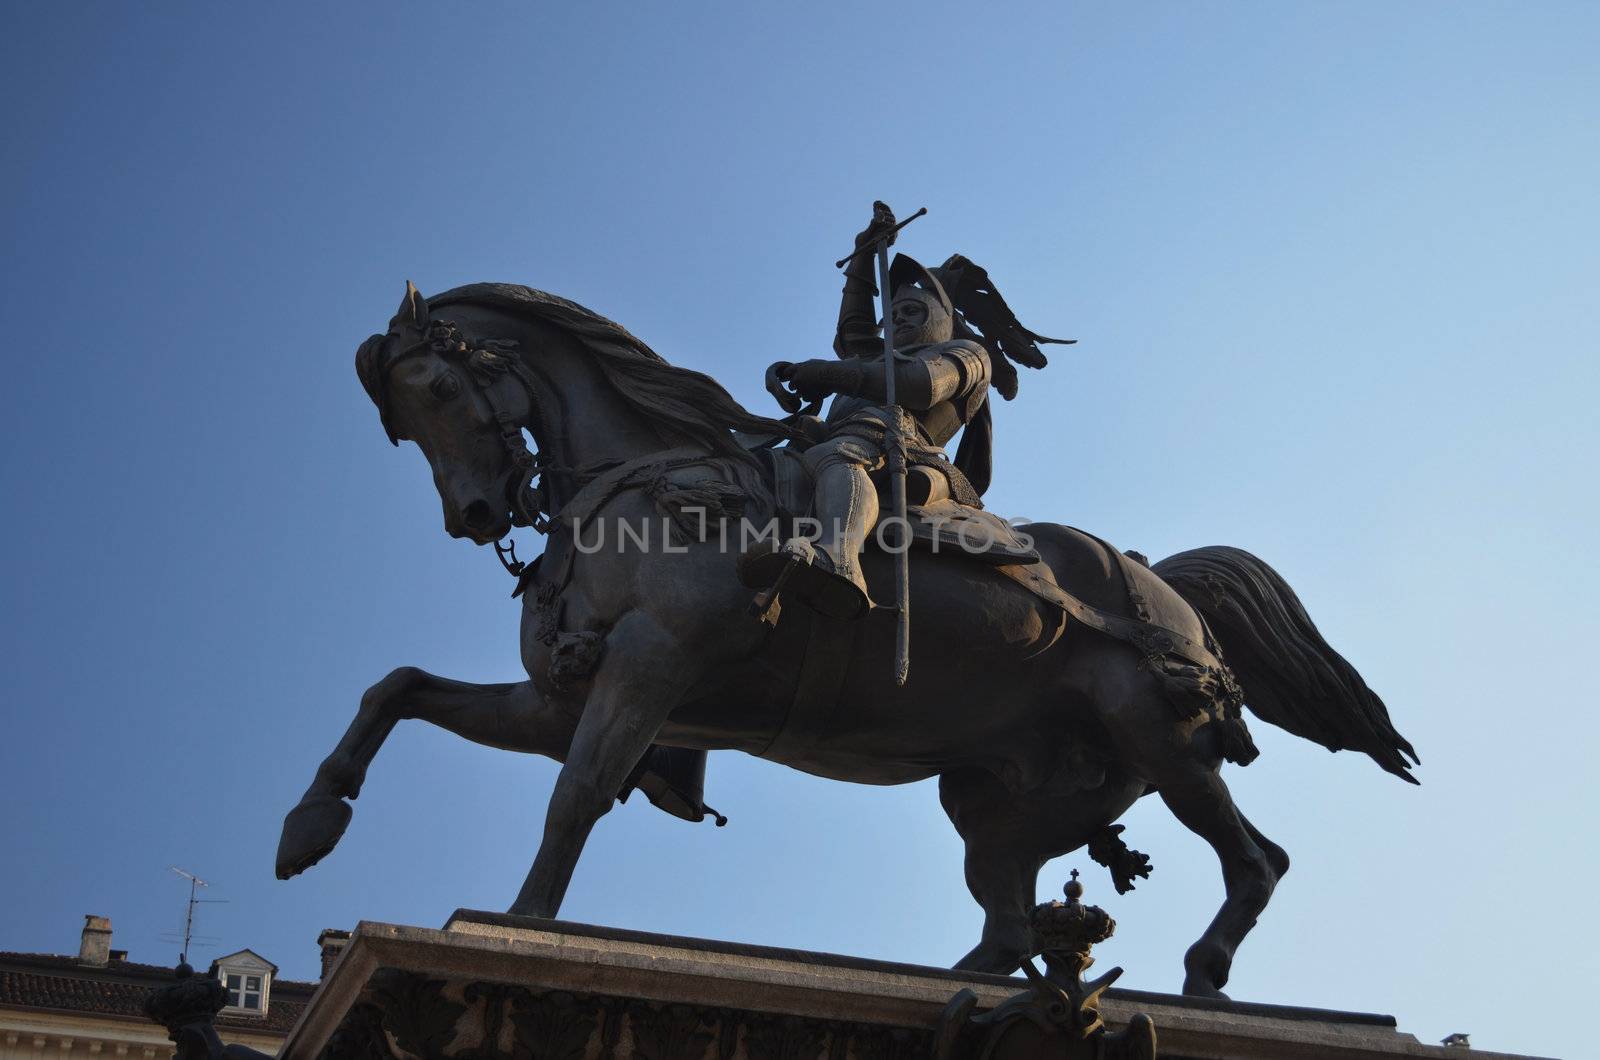 Equestrian statue in San Carlo Square in Turin, Italy by artofphoto